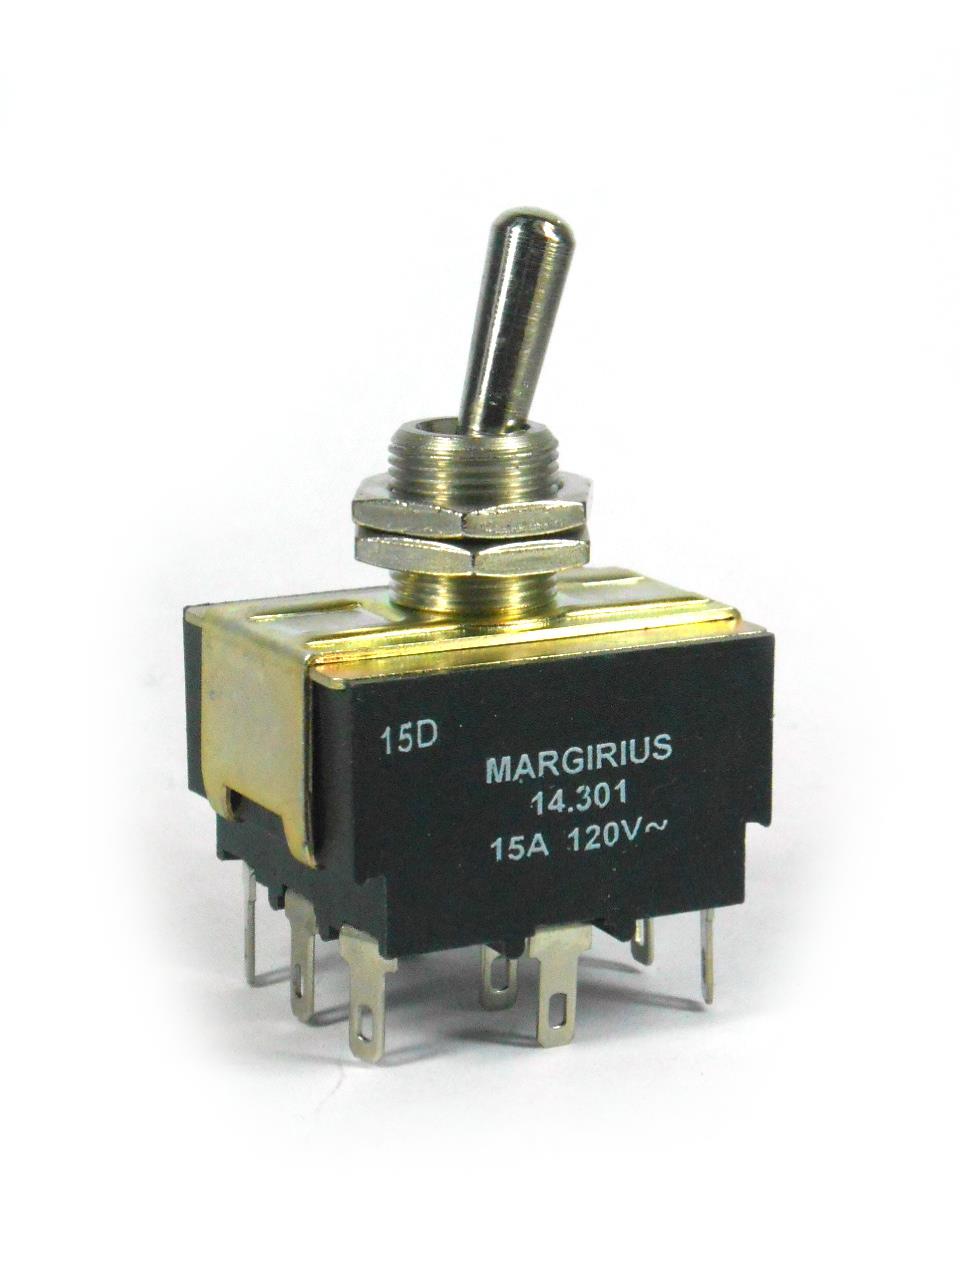 Interruptores de Alavanca - Interruptor tripolar 15A 120V E1Q